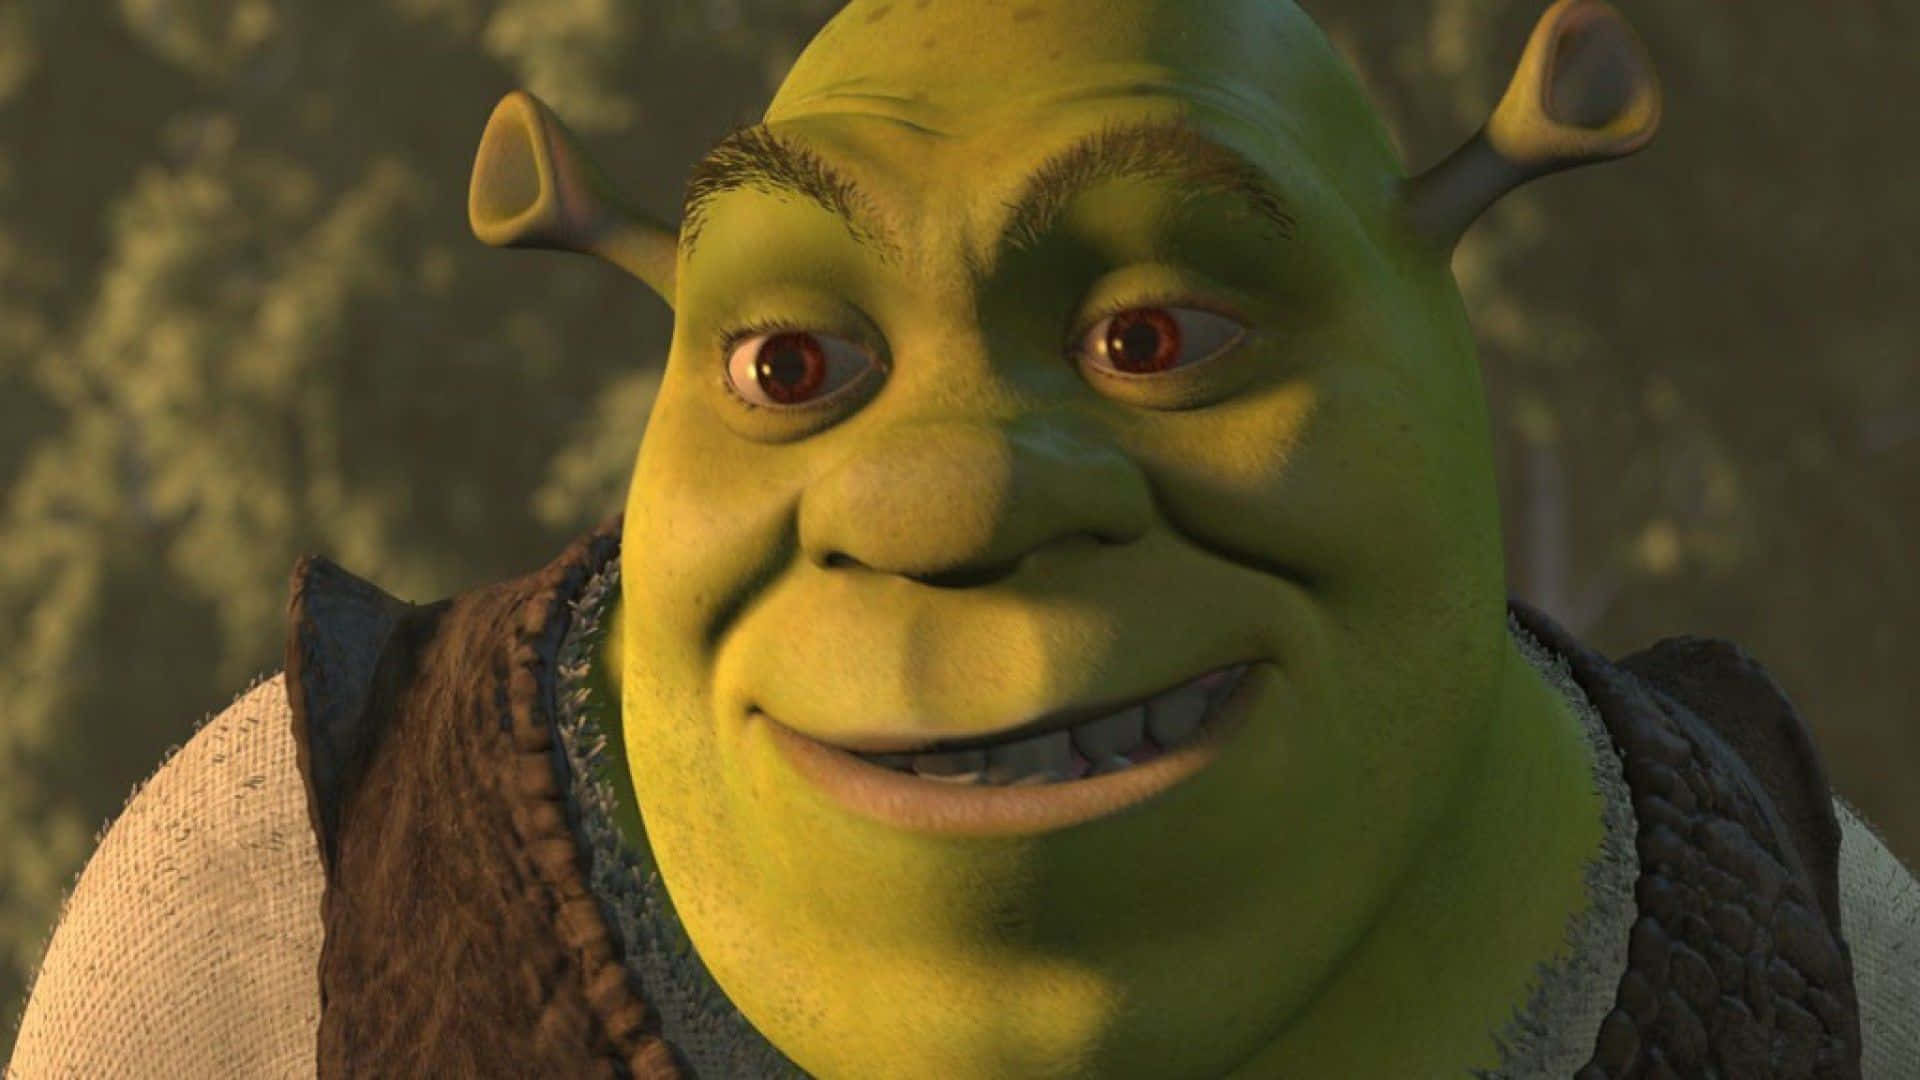 Hiccupund Shrek Finden Gemeinsam Ihre Wahre Stärke.